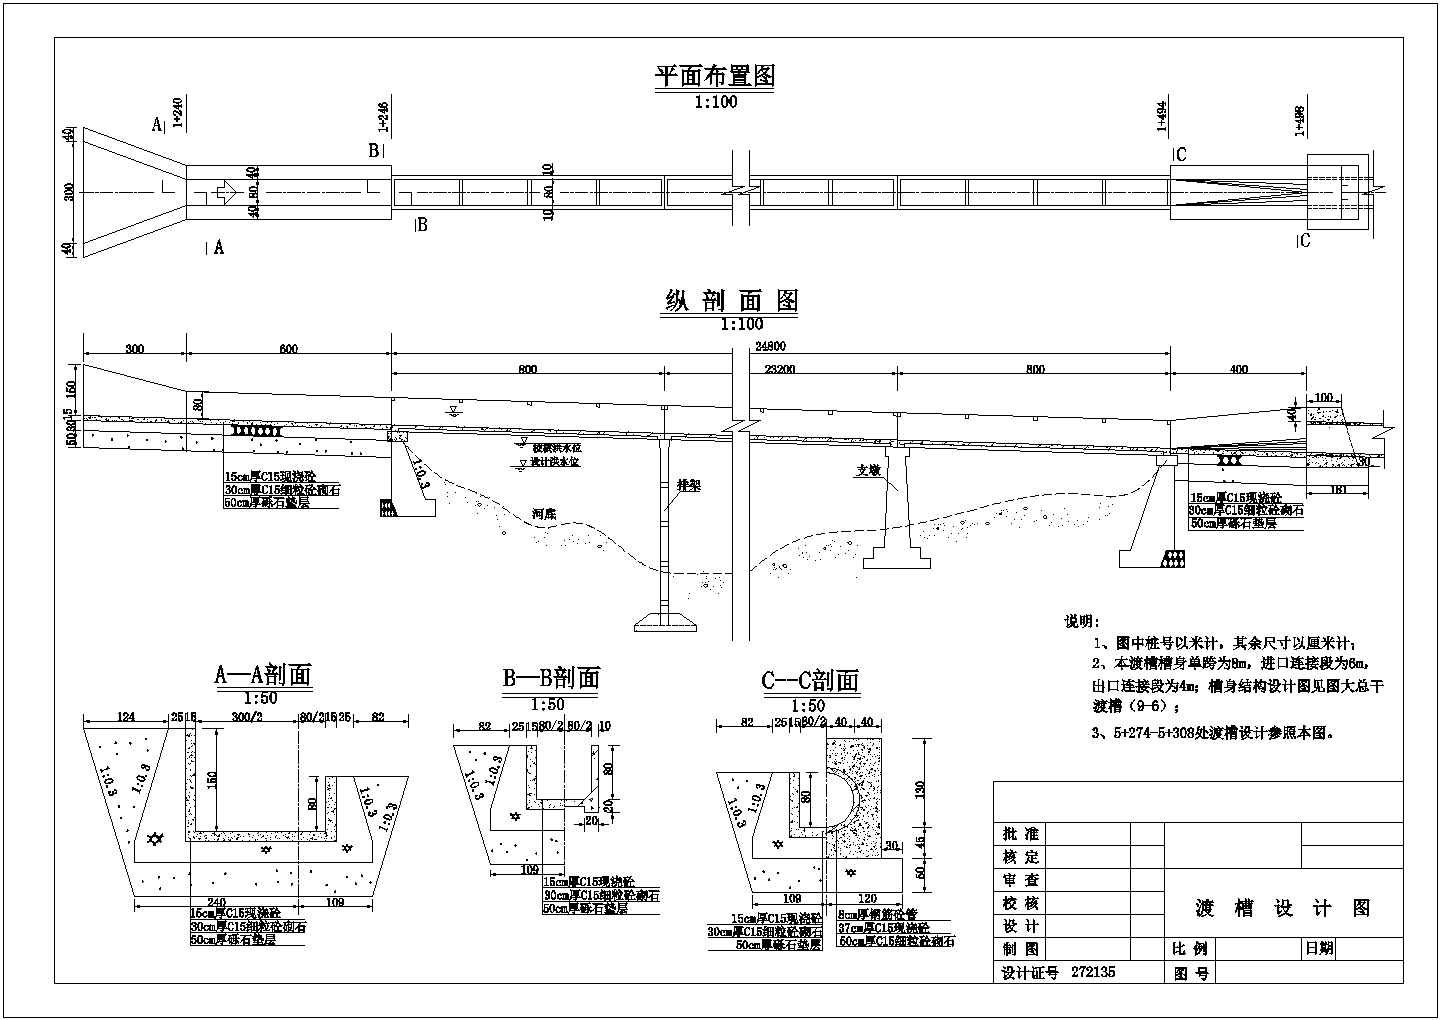 萍乡矩形渡槽排架配筋详细建筑施工图